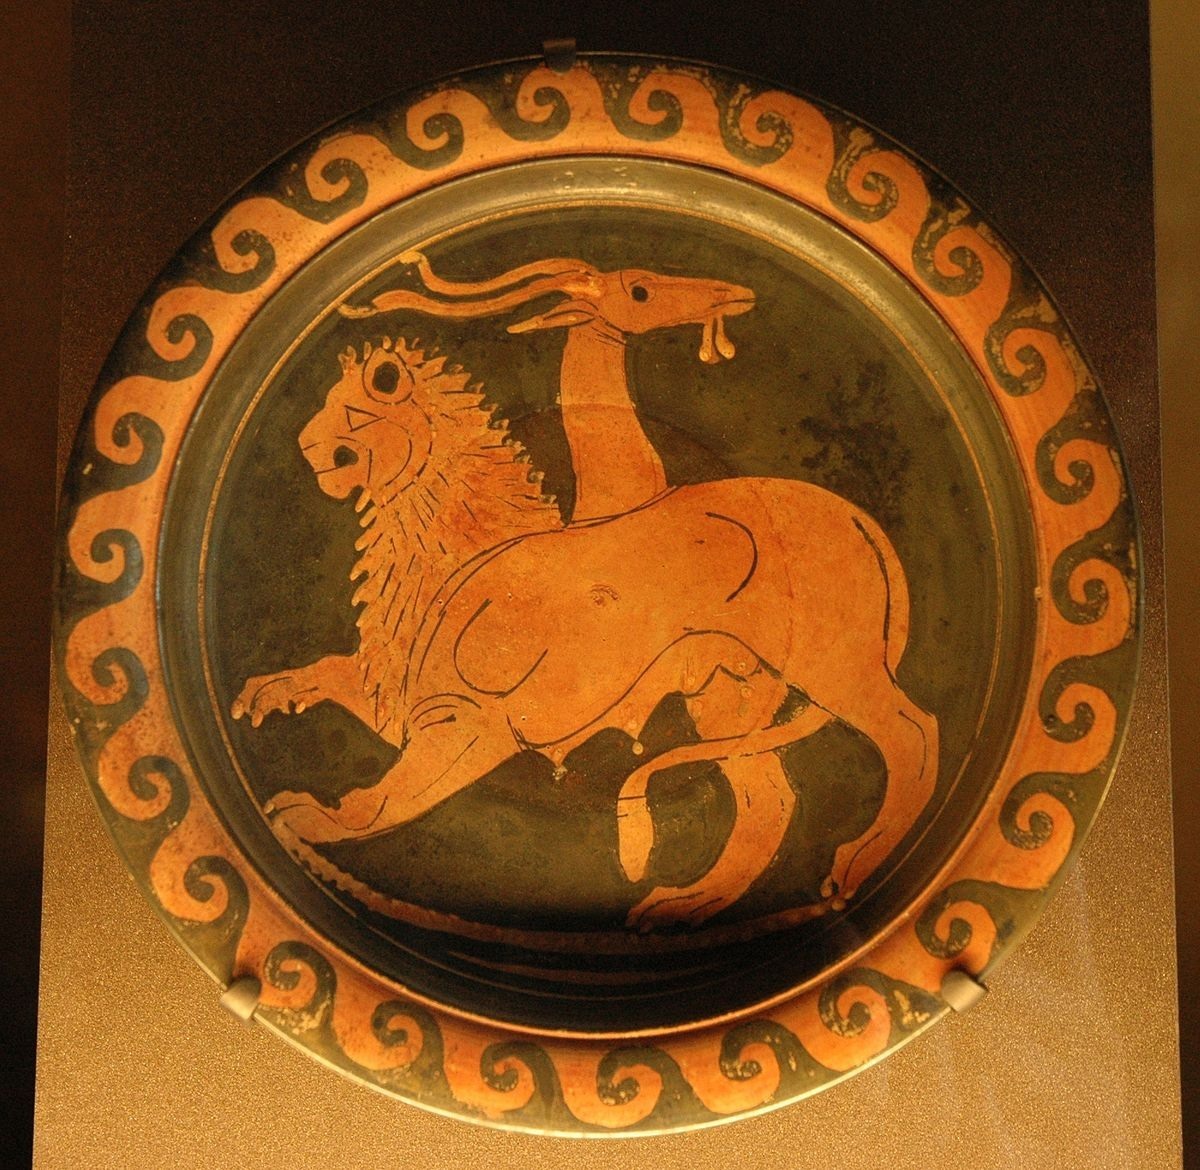 طبق يوناني قديم صنع في 350-340 قبل الميلاد